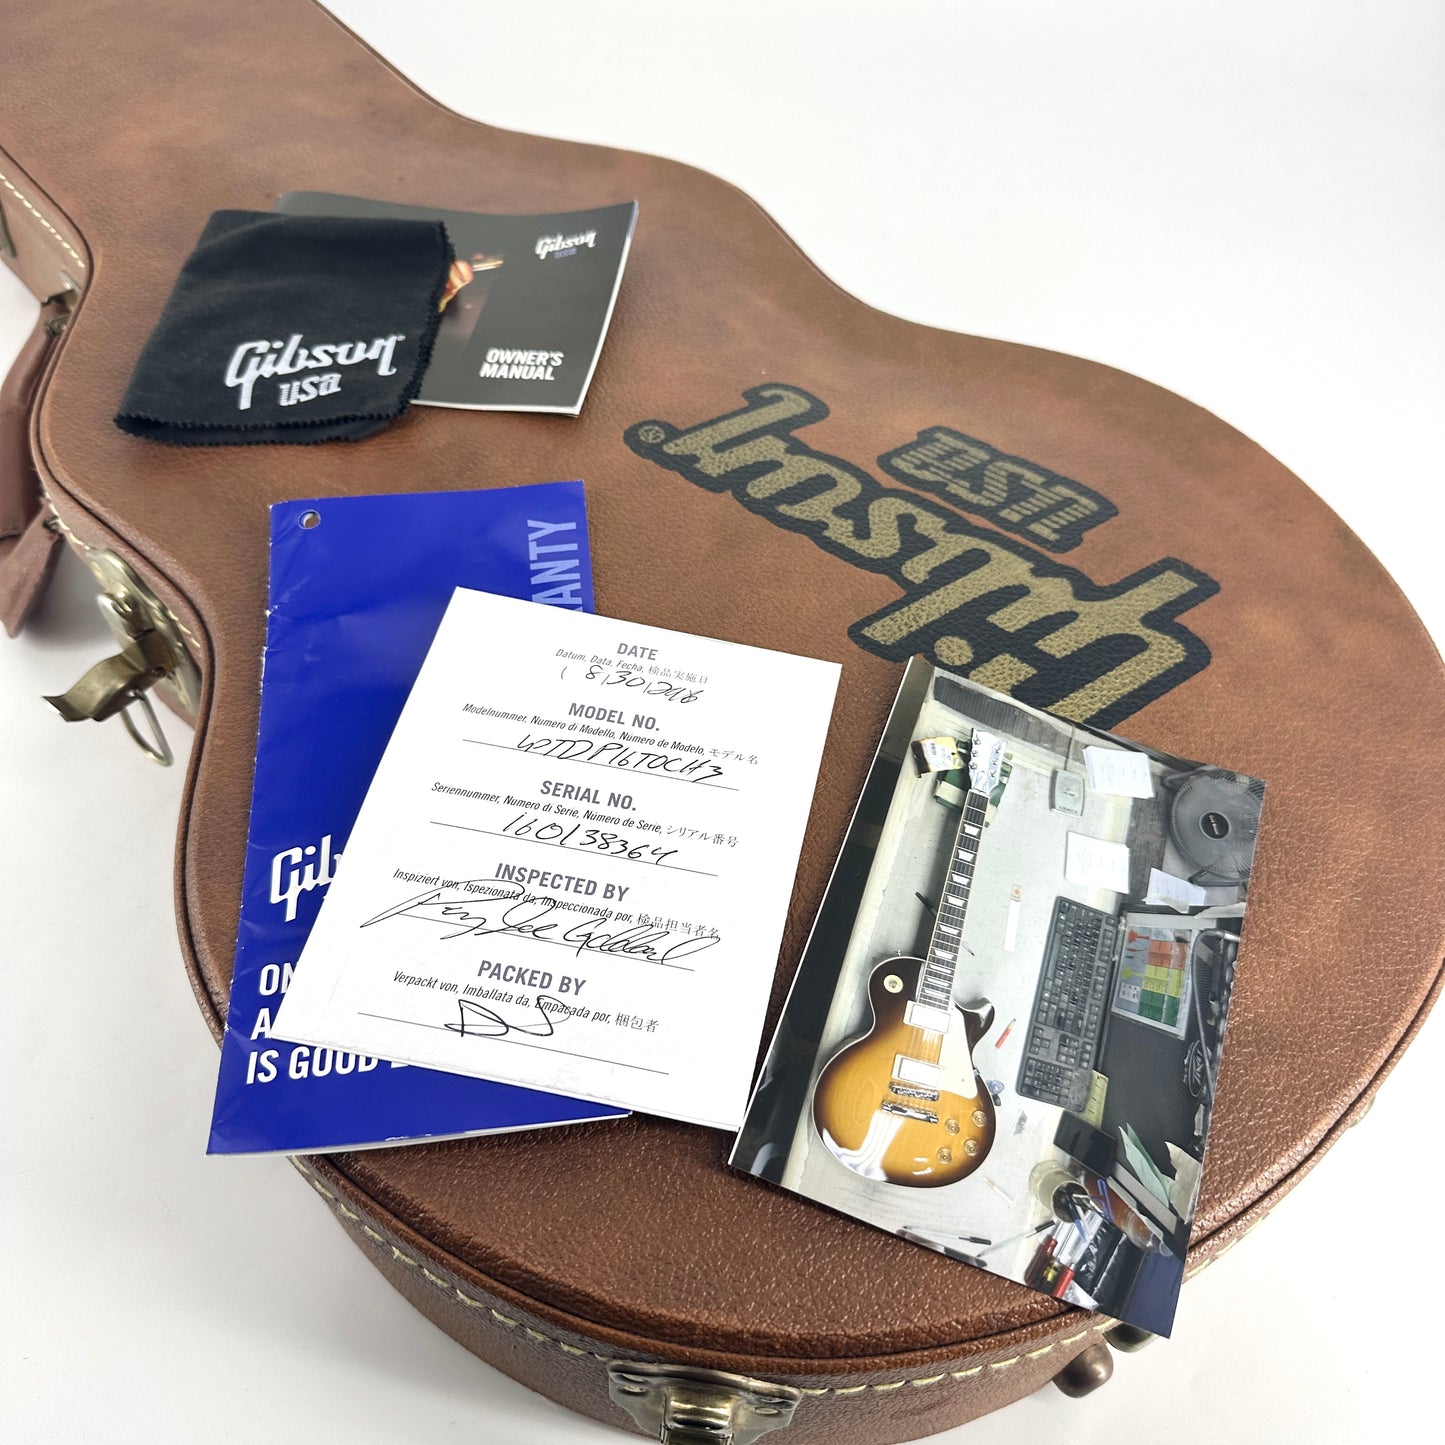 2016 Gibson Les Paul Traditional – Iced Tea